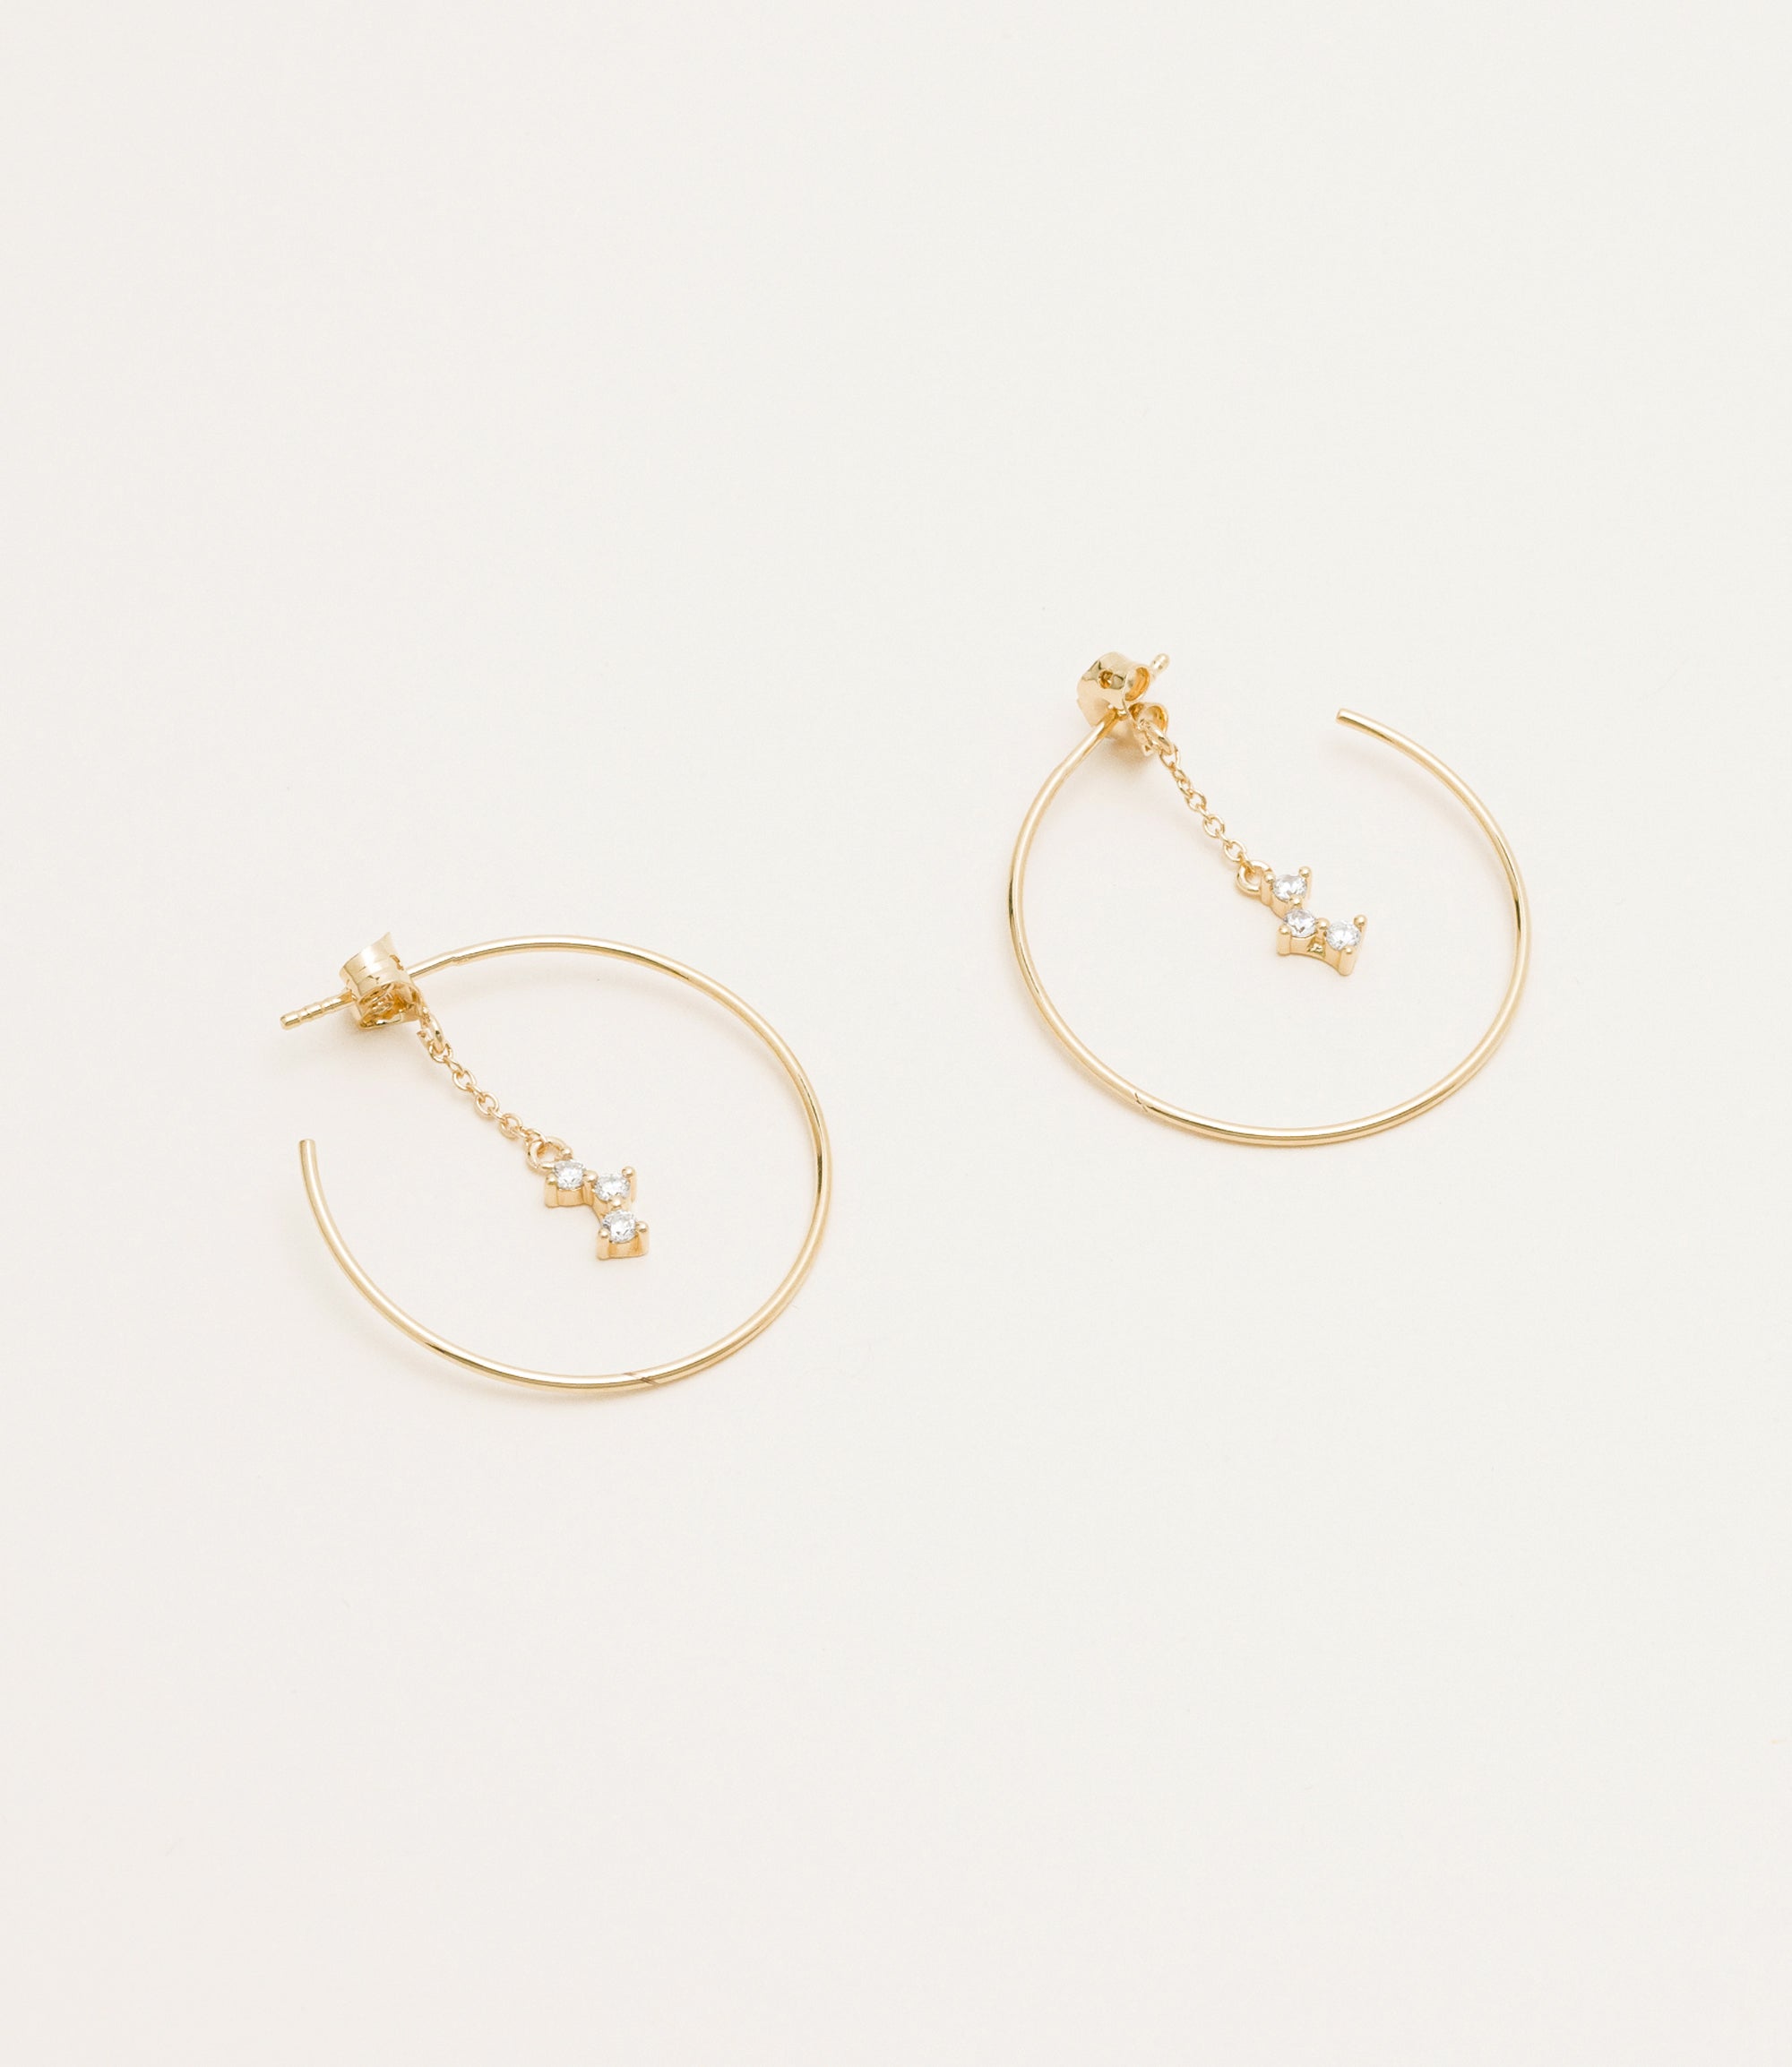 Aldova earrings